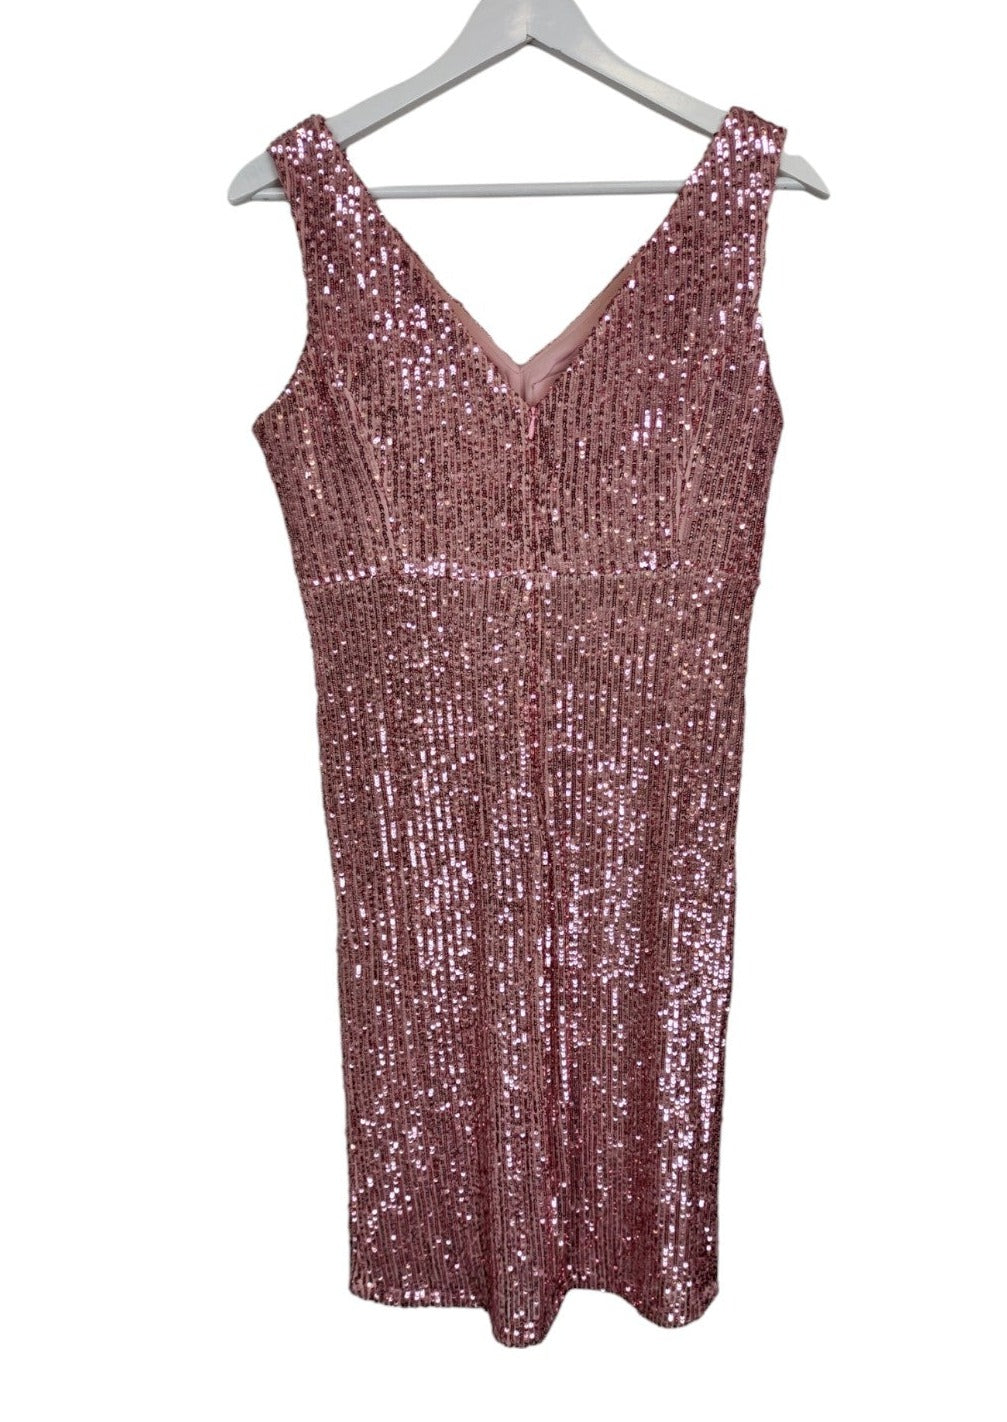 Αμπιγιέ, ελαστικό Φόρεμα NUIT VERA με Παγιέτες σε Παλ Ροζ χρώμα (Small)